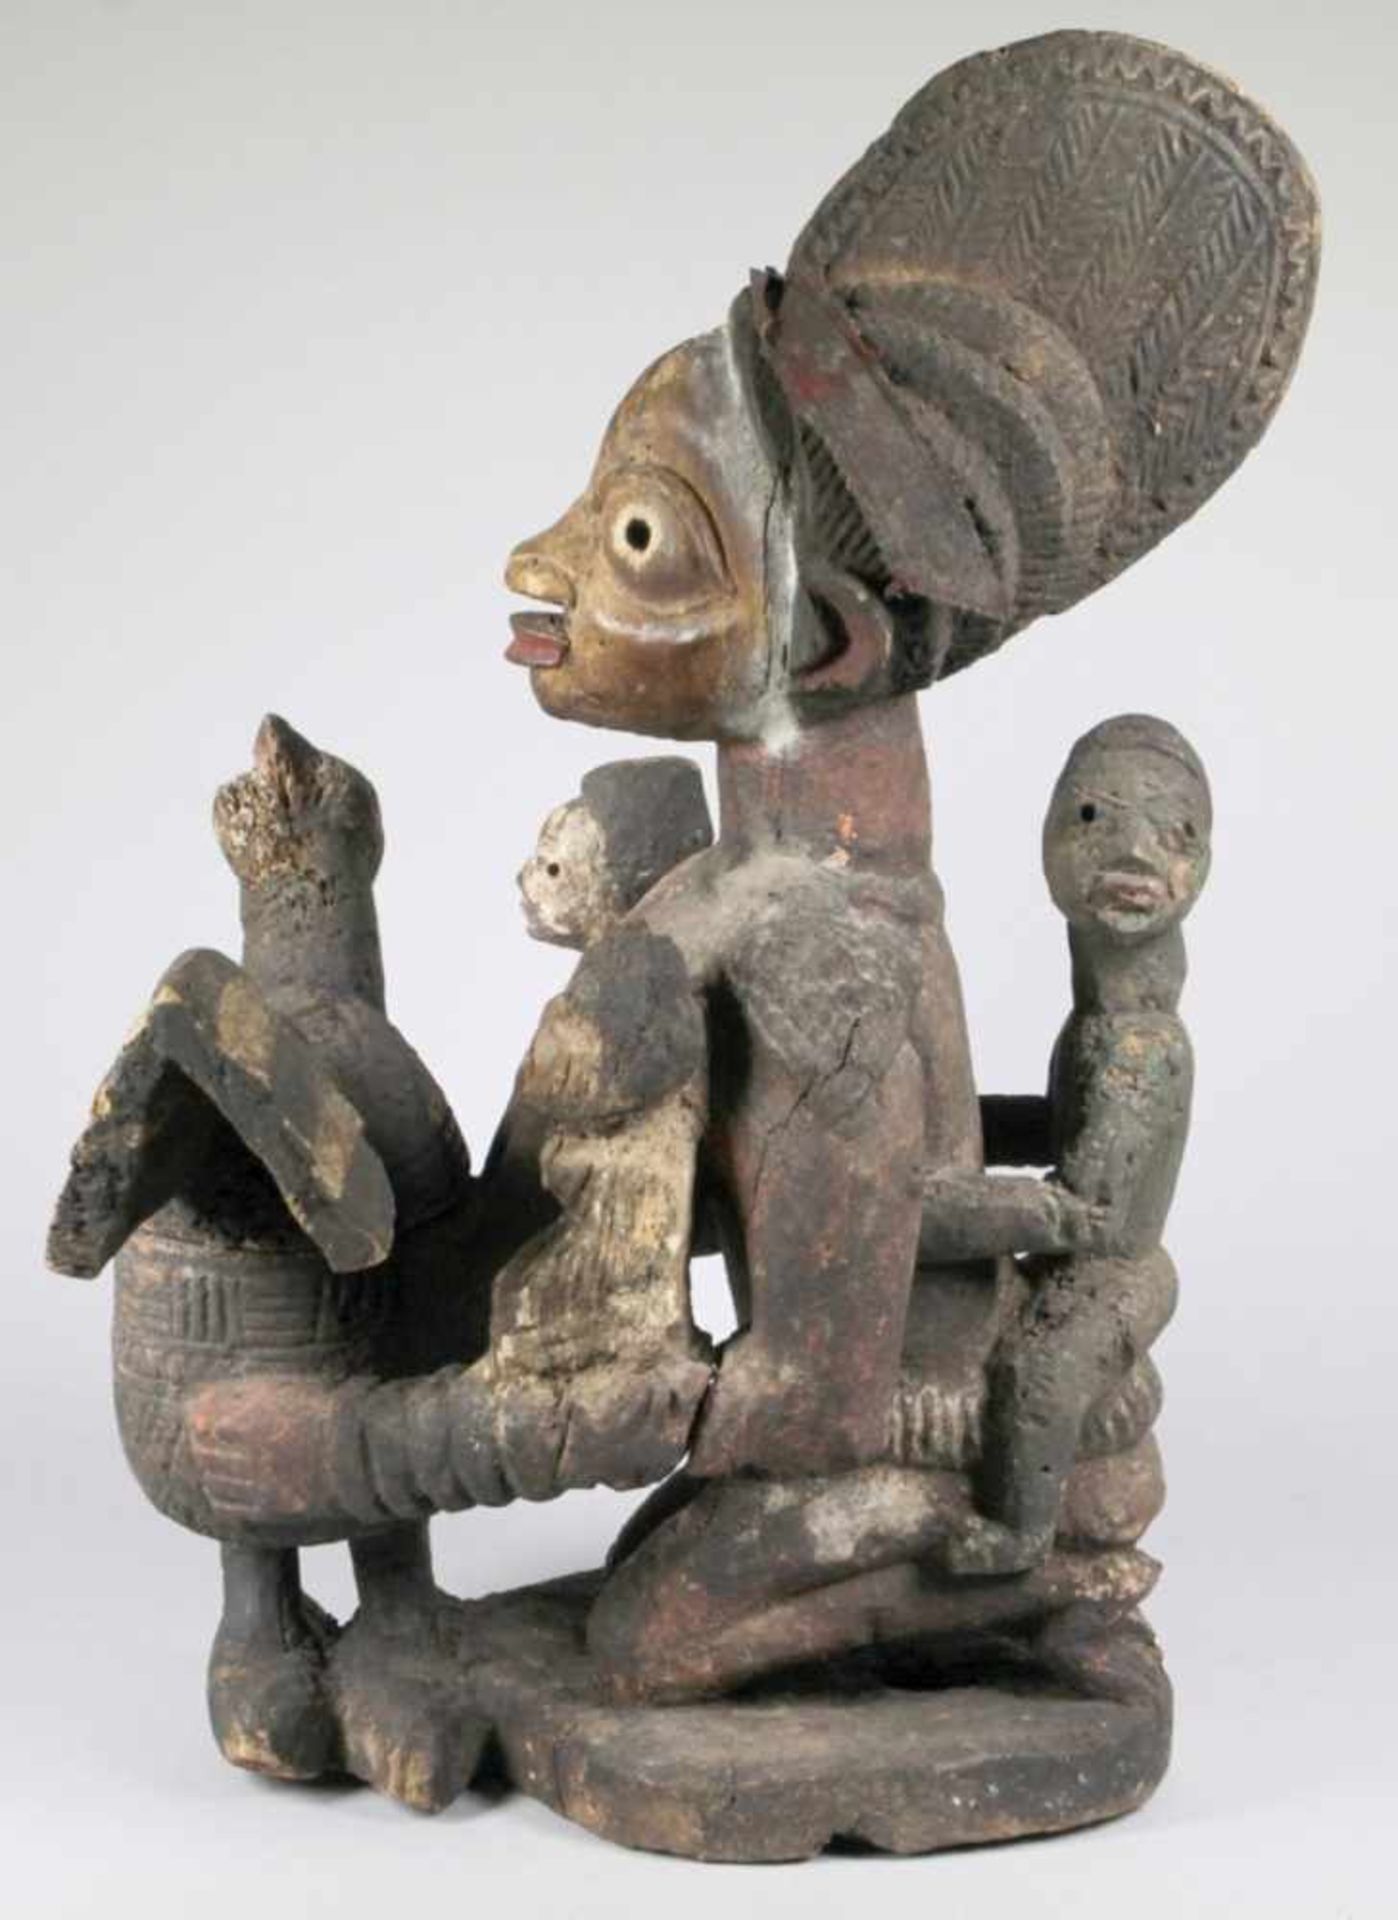 Mutter-Figur bzw. Schalenträgerin, Yoruba, Nigeria, auf Flachplinthe kniende, weibliche< - Bild 2 aus 5